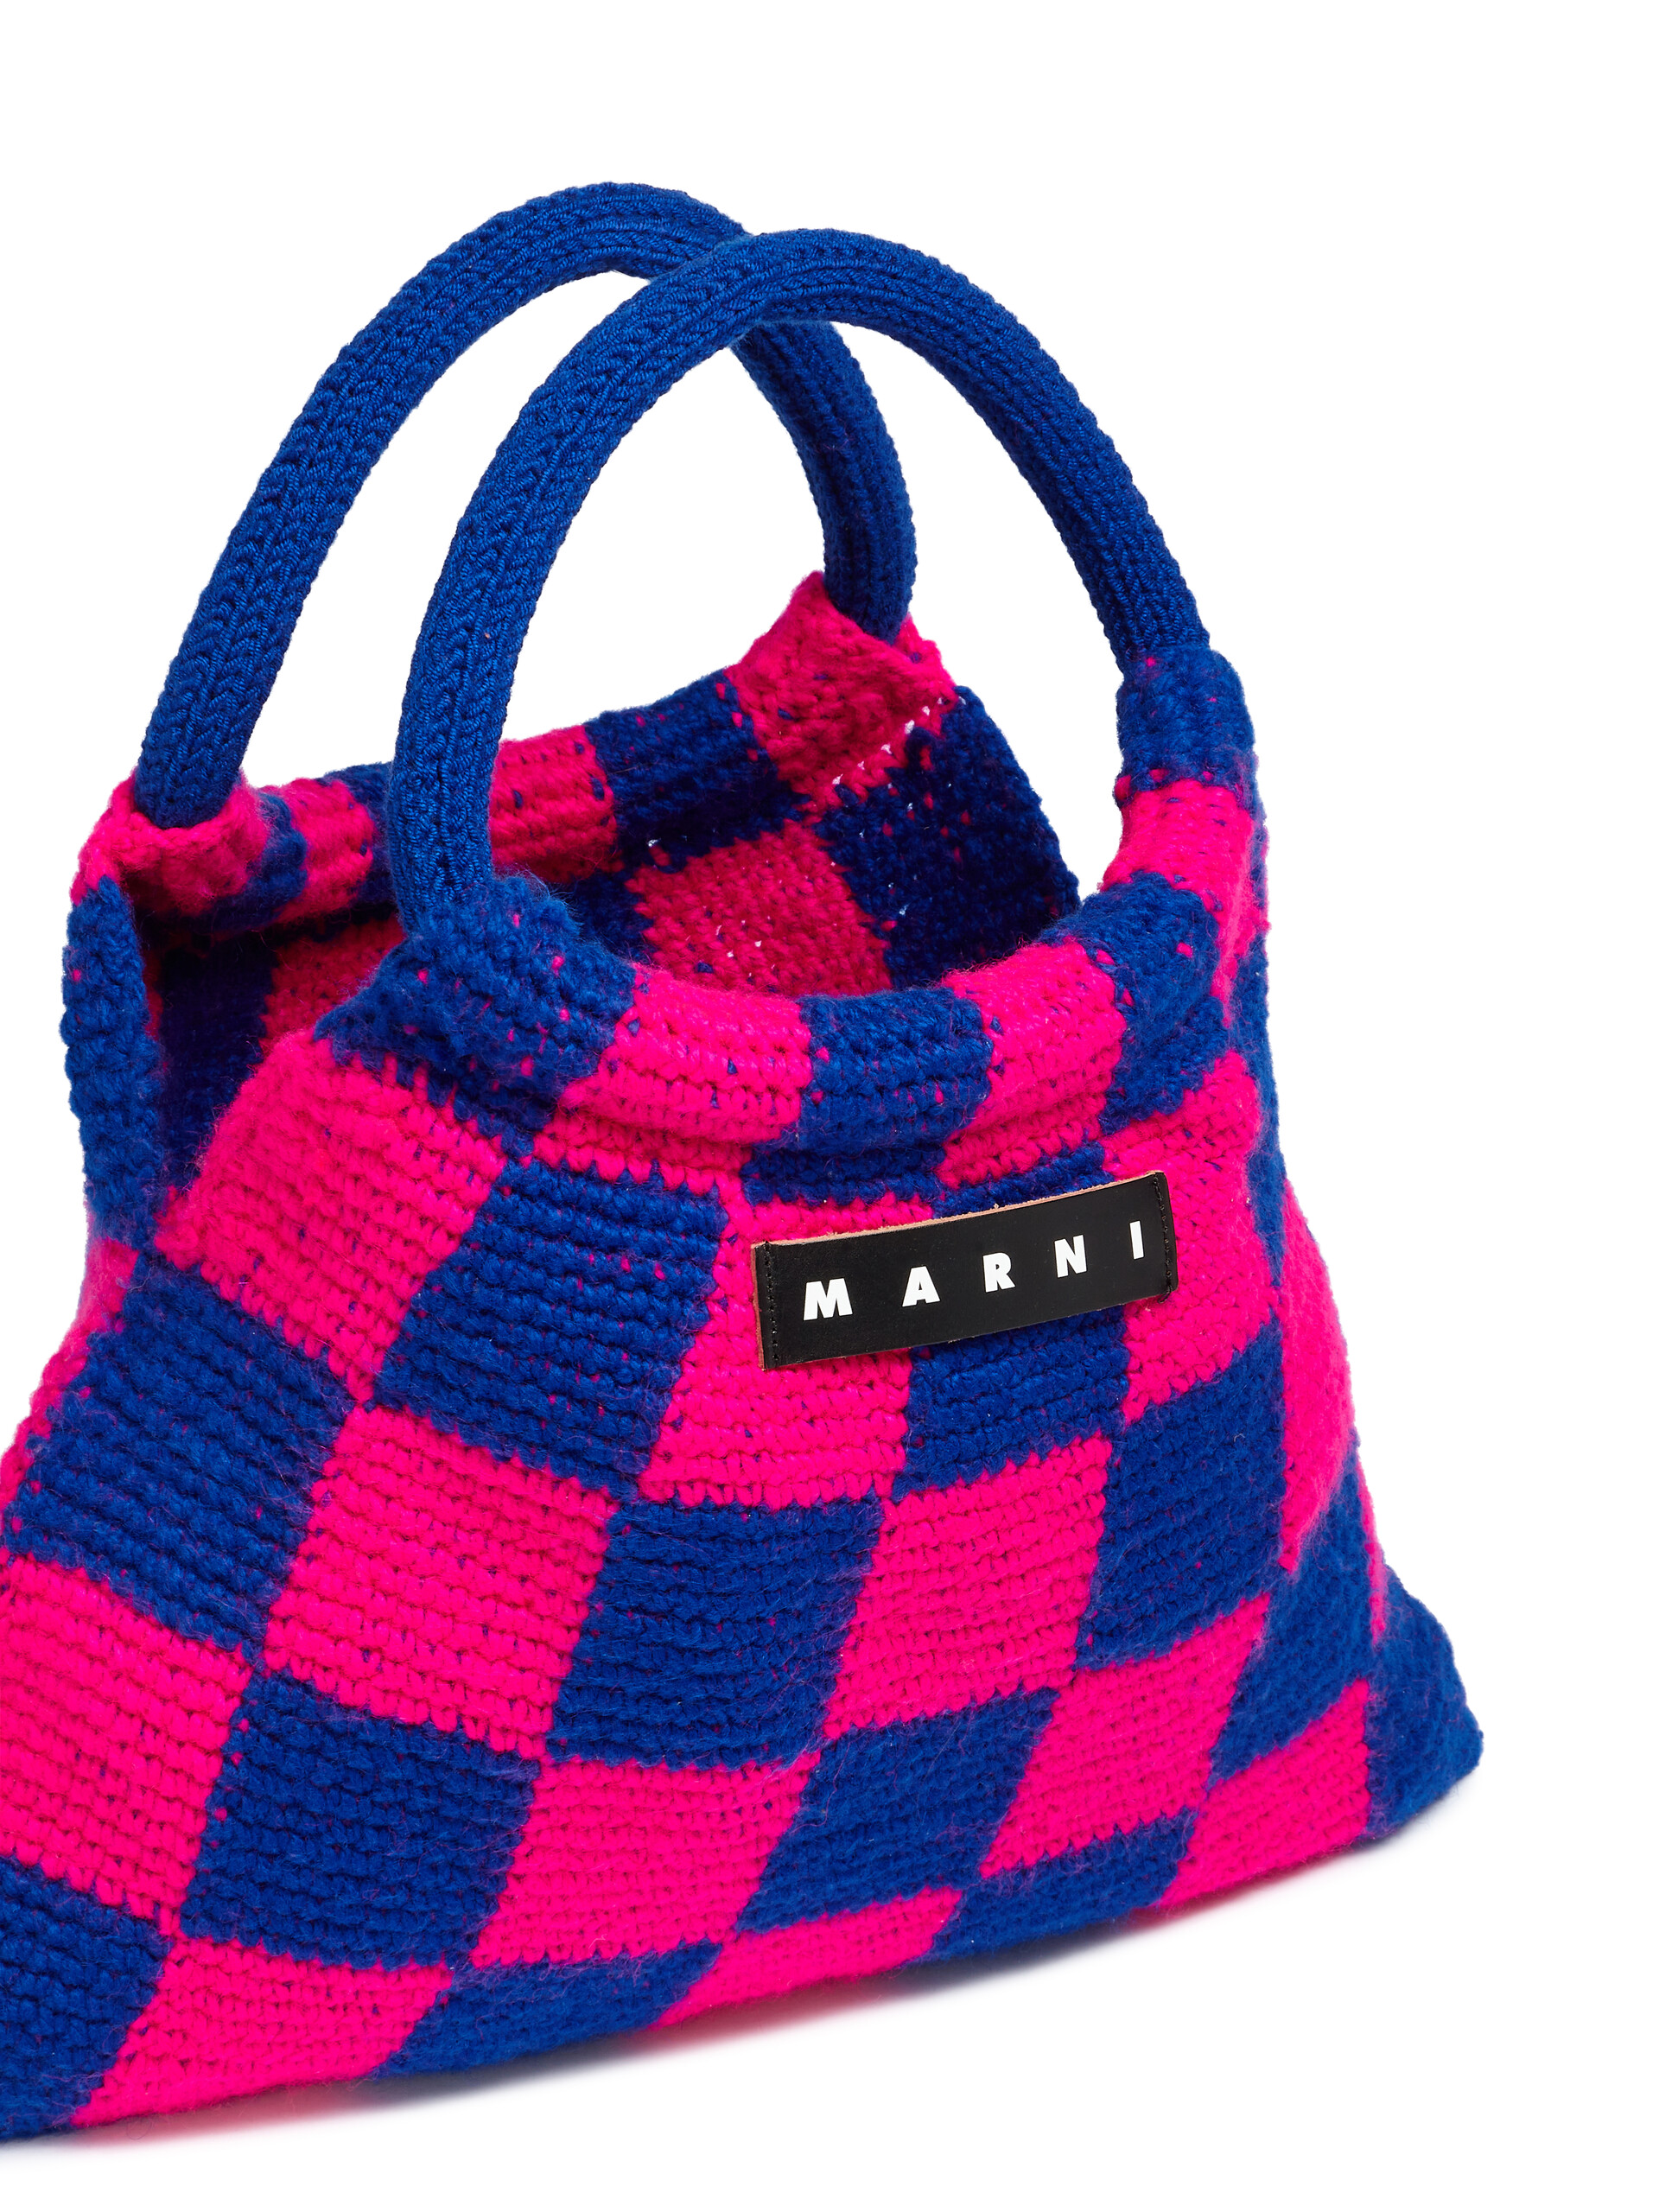 Bolso MARNI MARKET GRANNY de croché rosa y azul - Bolsos shopper - Image 4